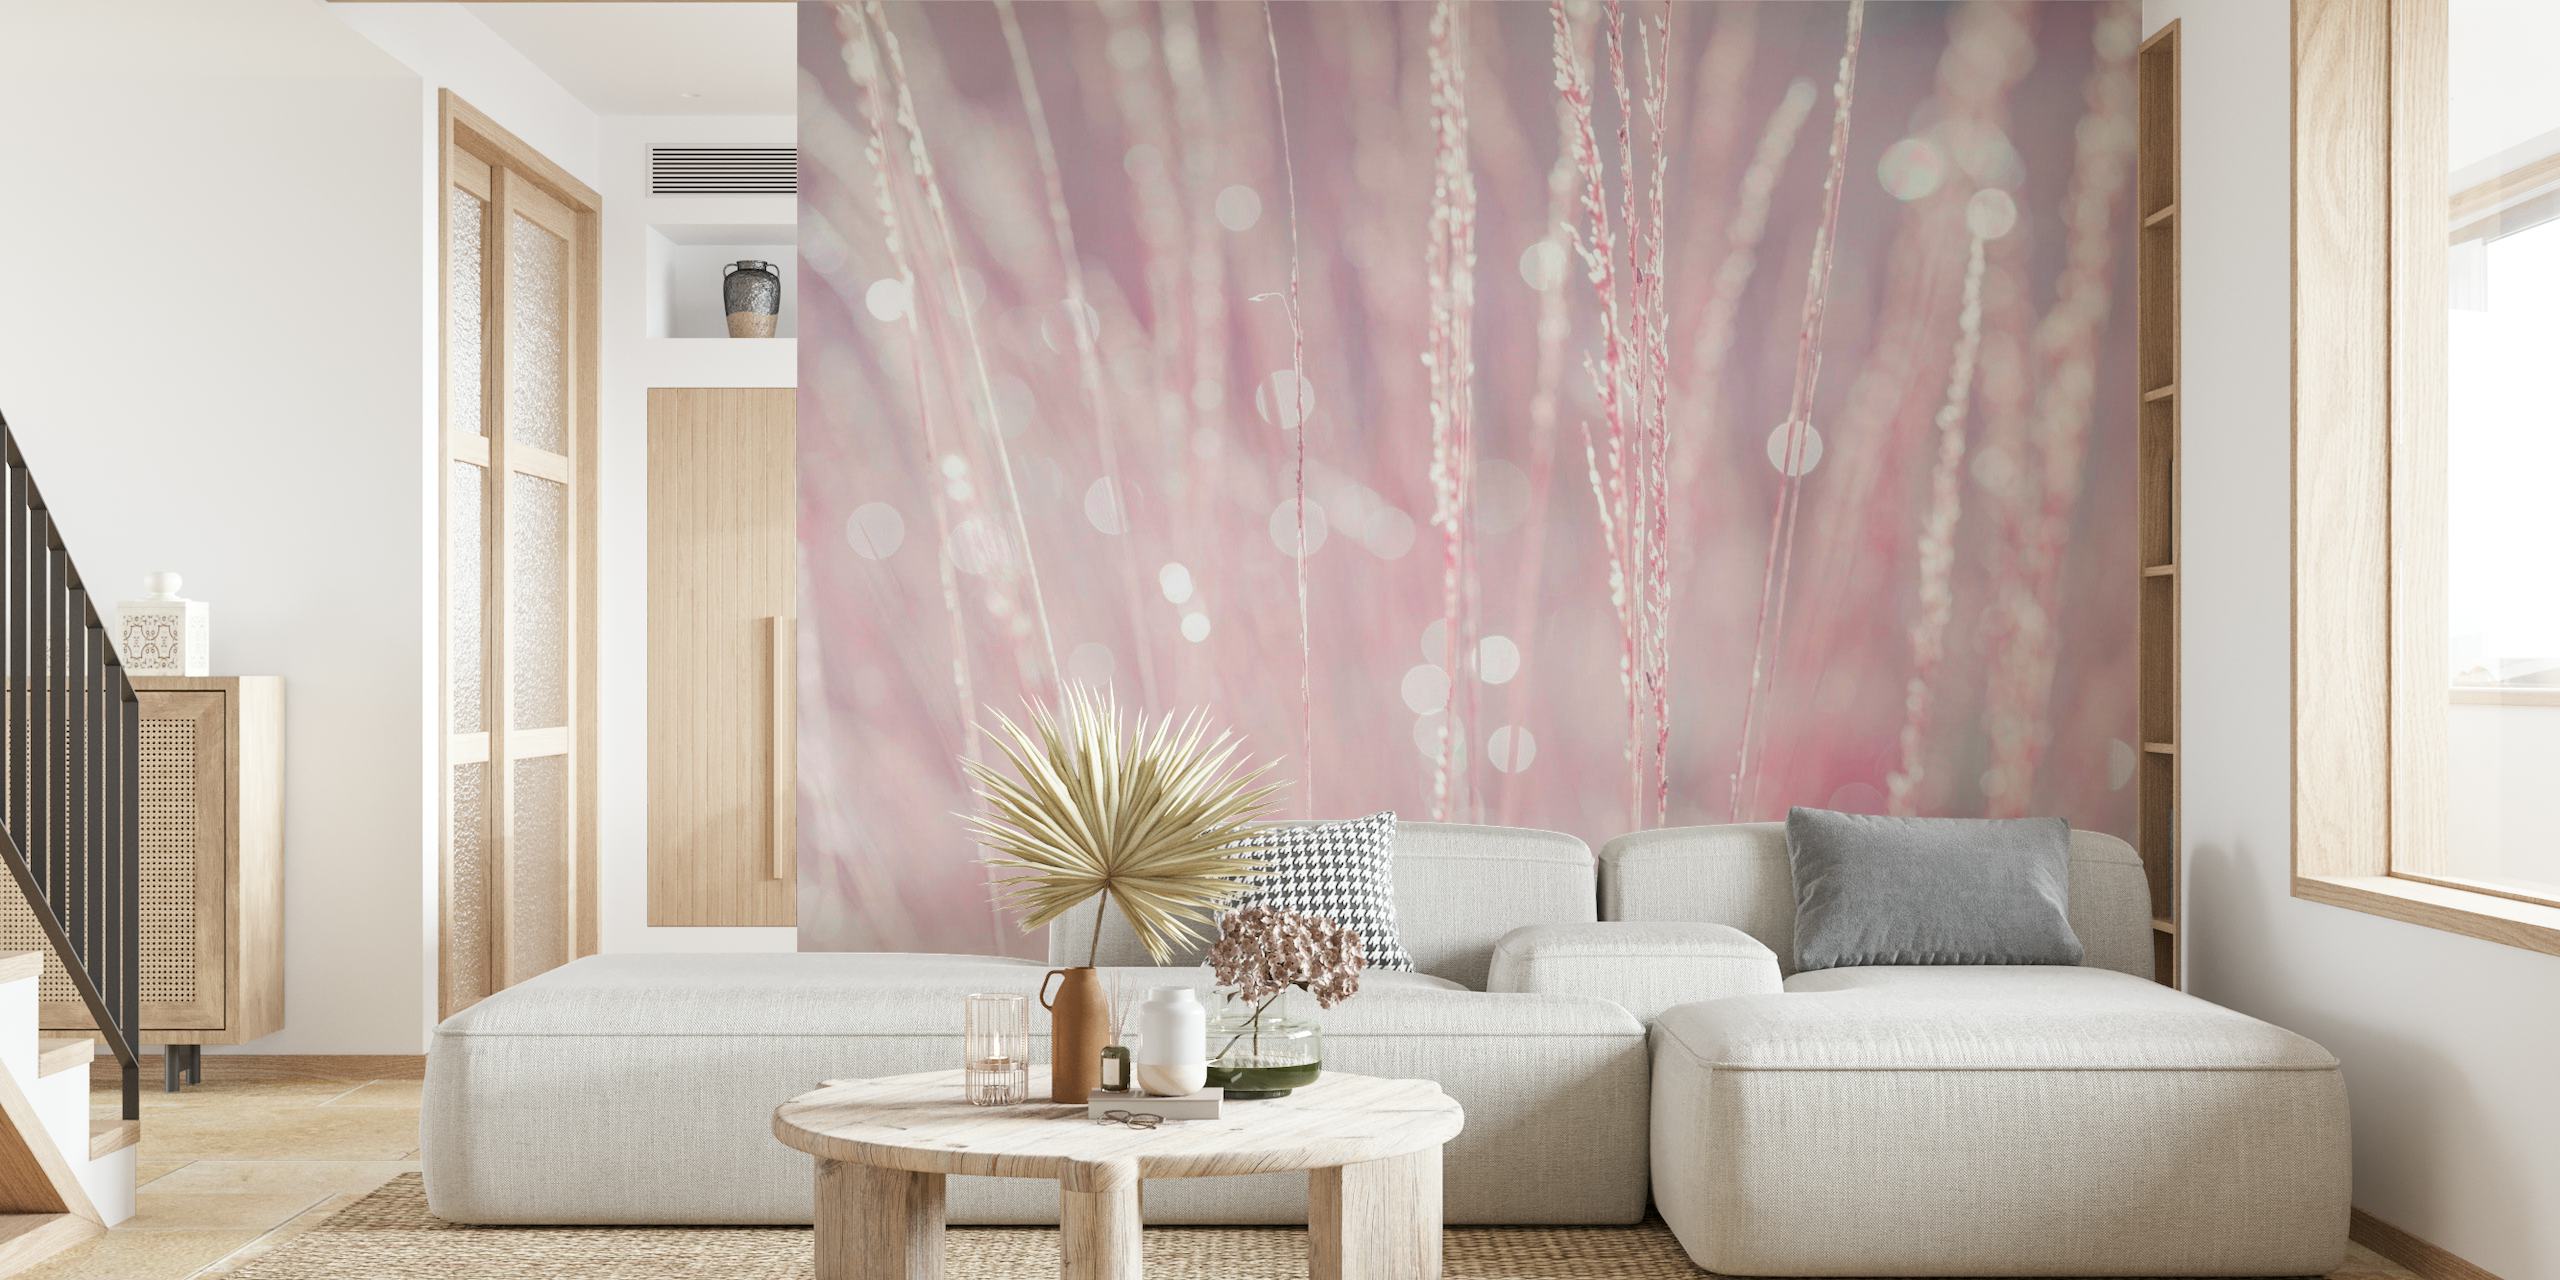 Fotomural de pared Primer plano de enfoque suave de hierba rosa con gotas de rocío